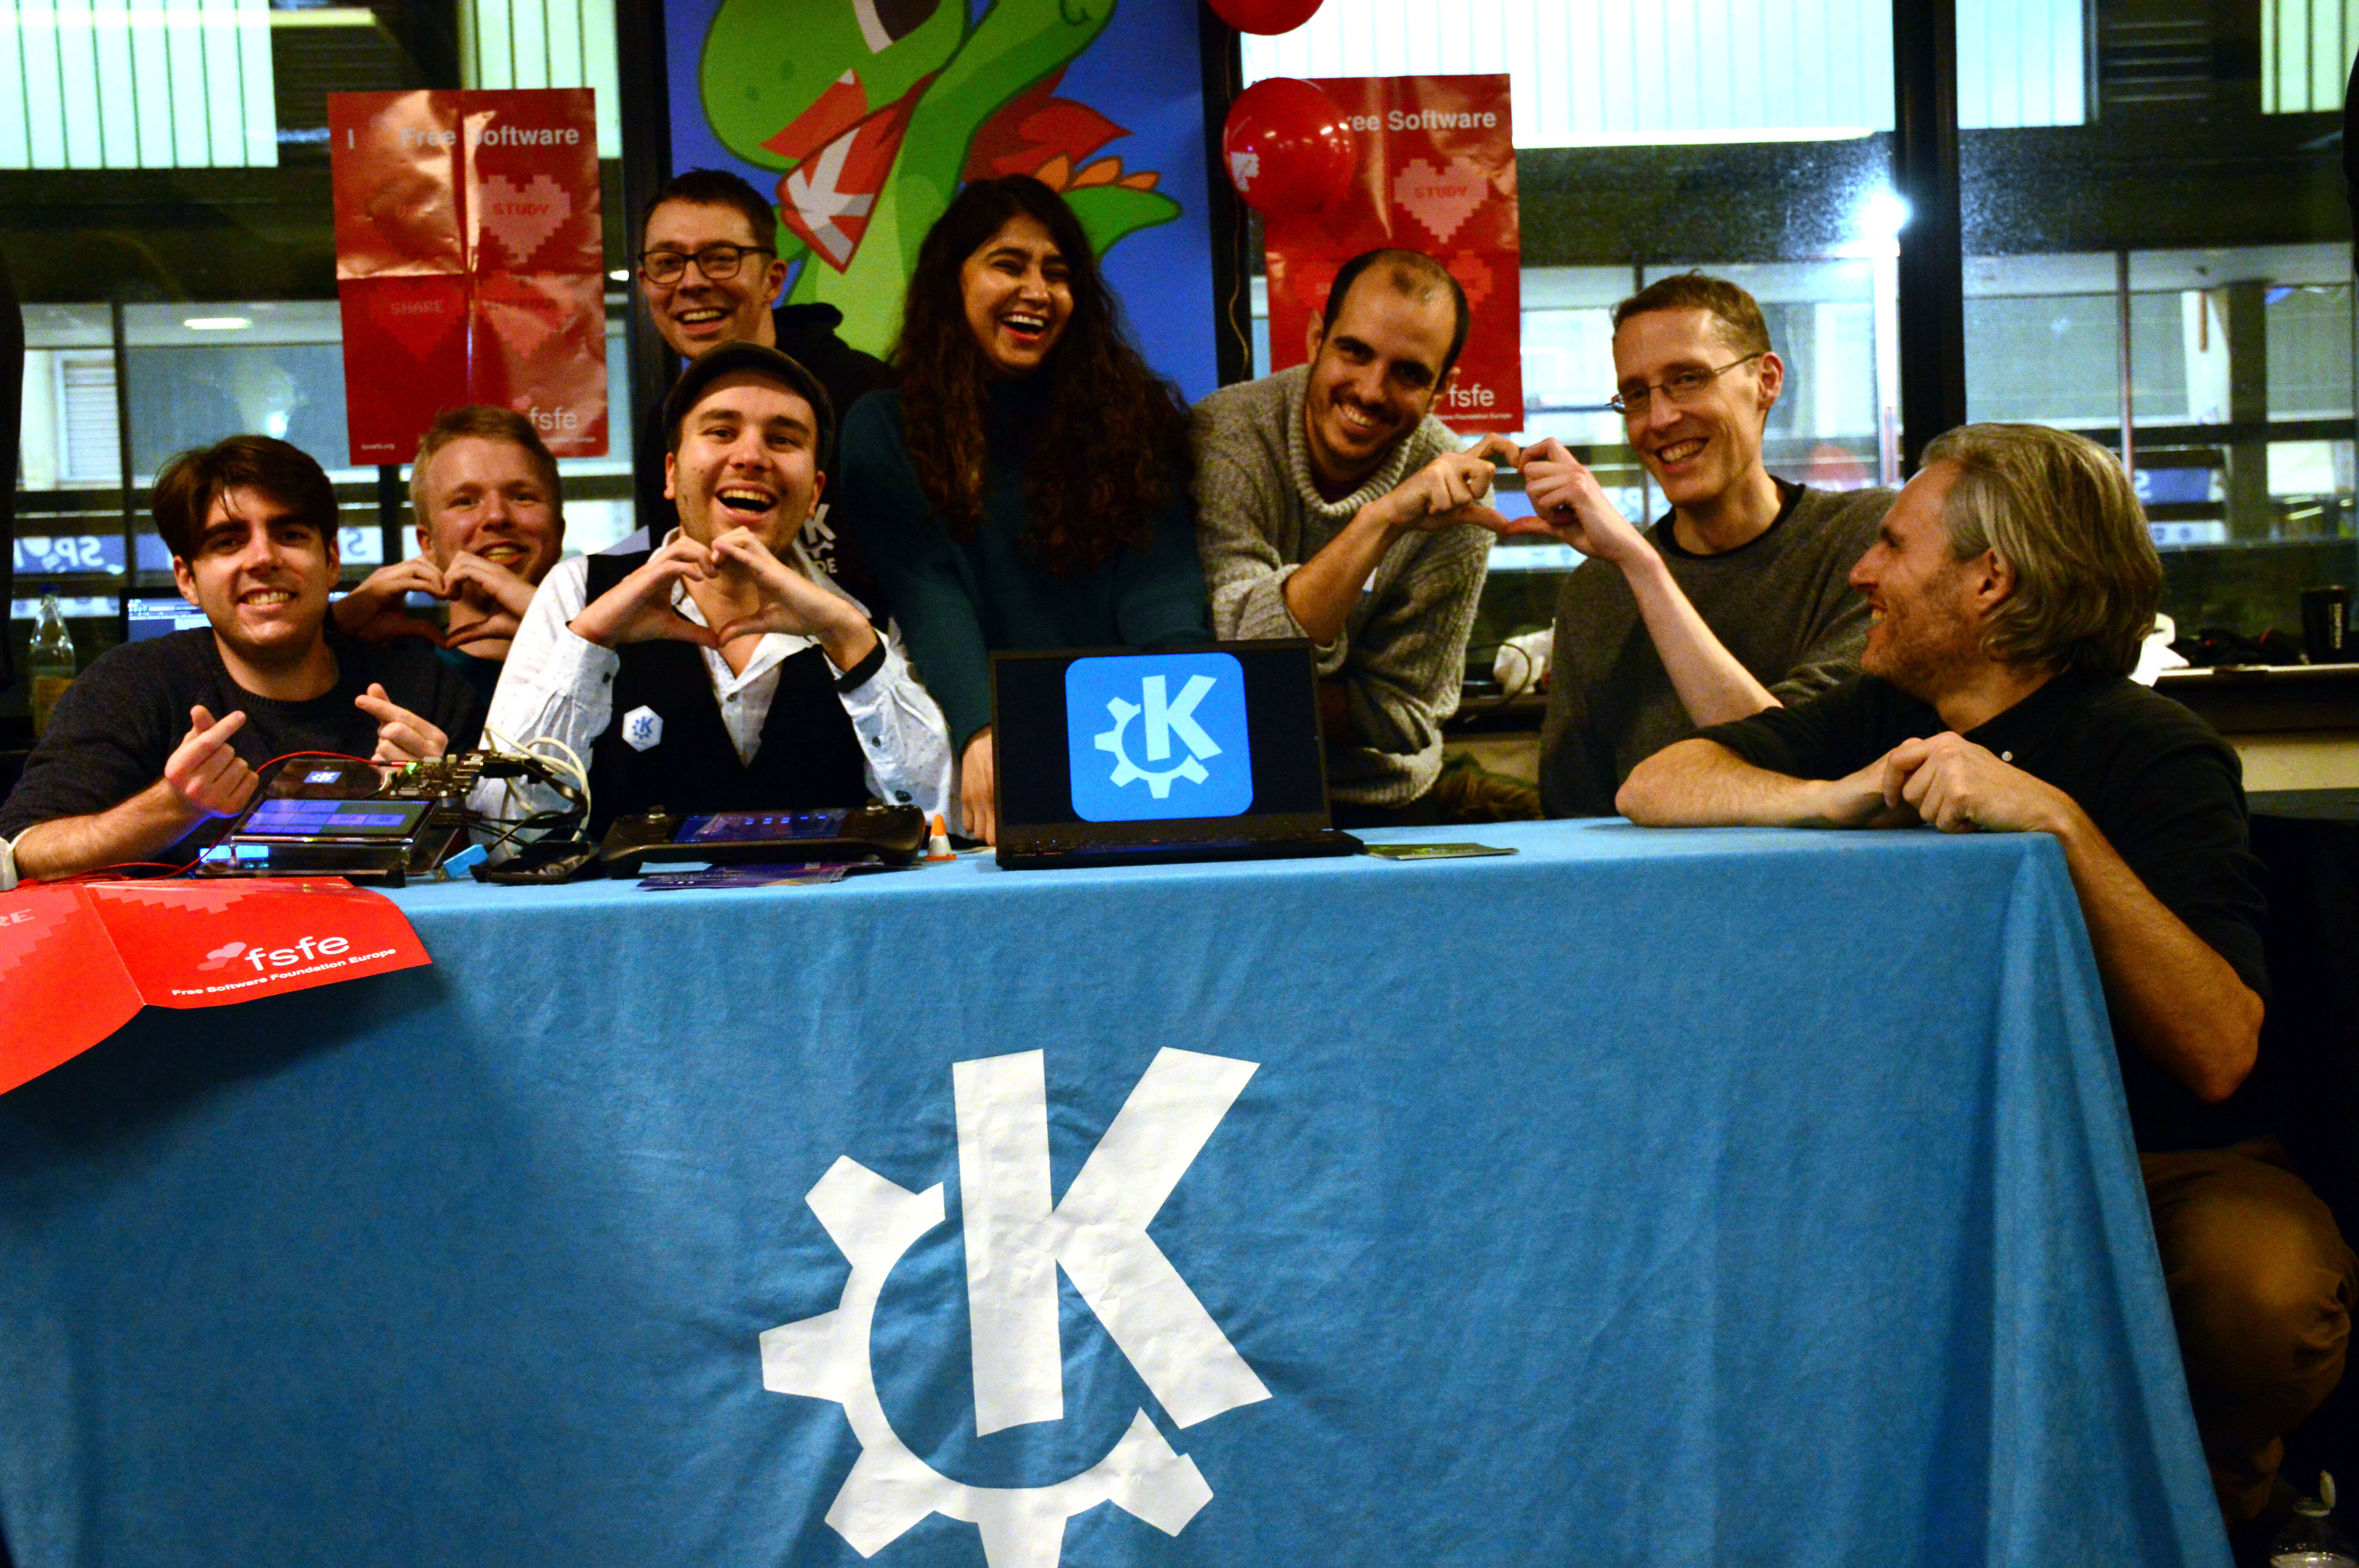 L'equip de KDE expressant la seva ❤ pel programari lliure